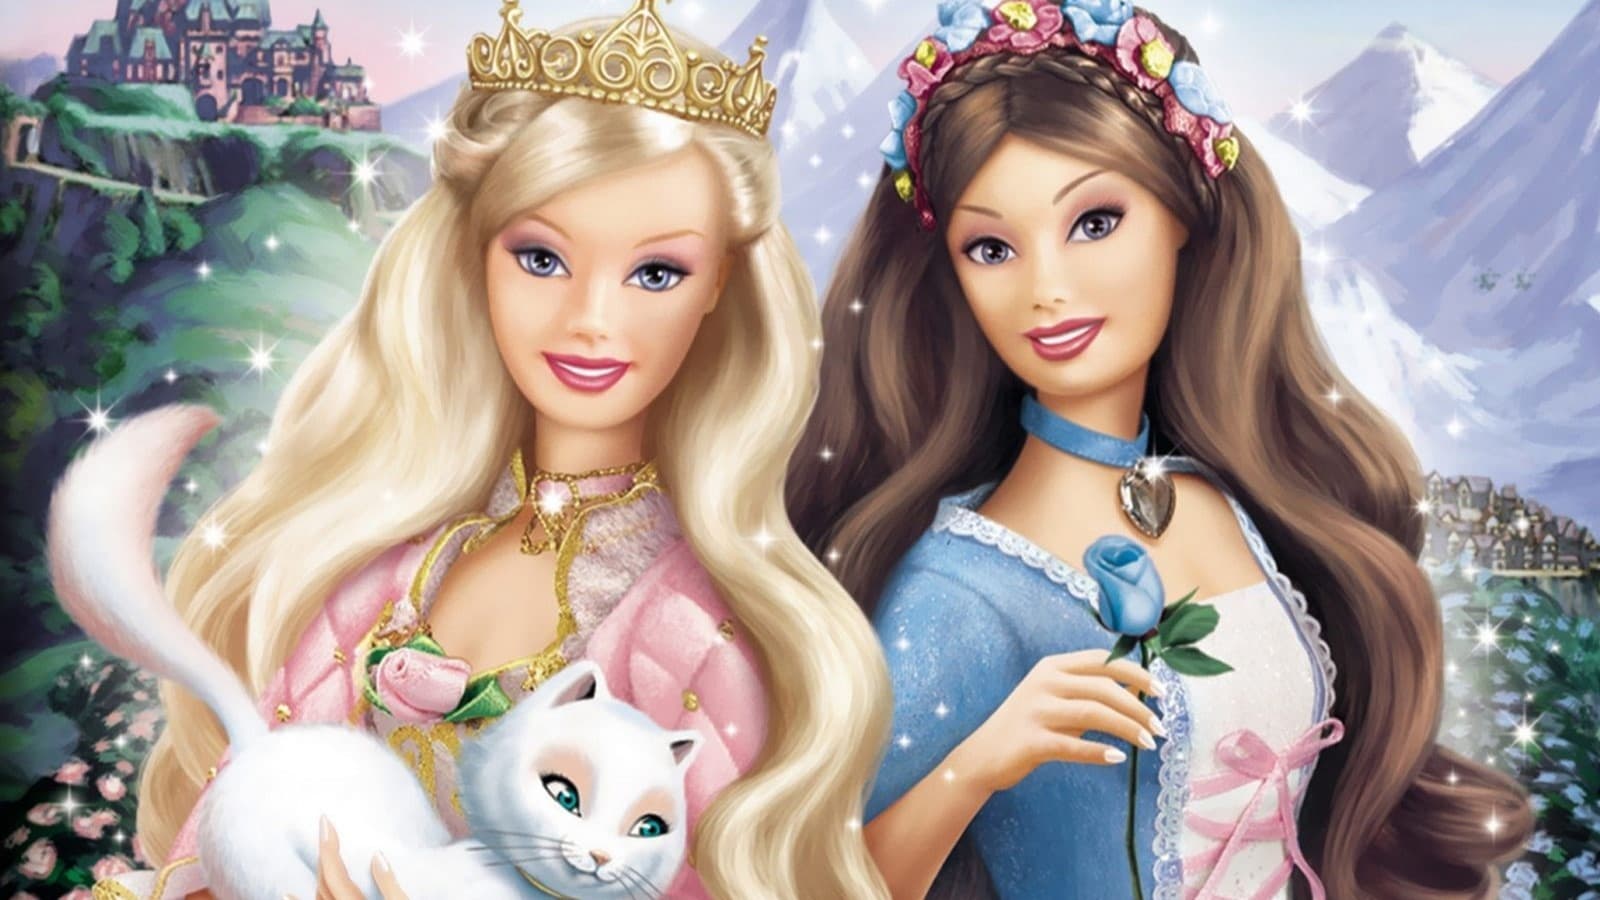 Xem Phim Barbie vào vai Công Chúa và Nàng Lọ Lem (Barbie as The Princess & the Pauper)